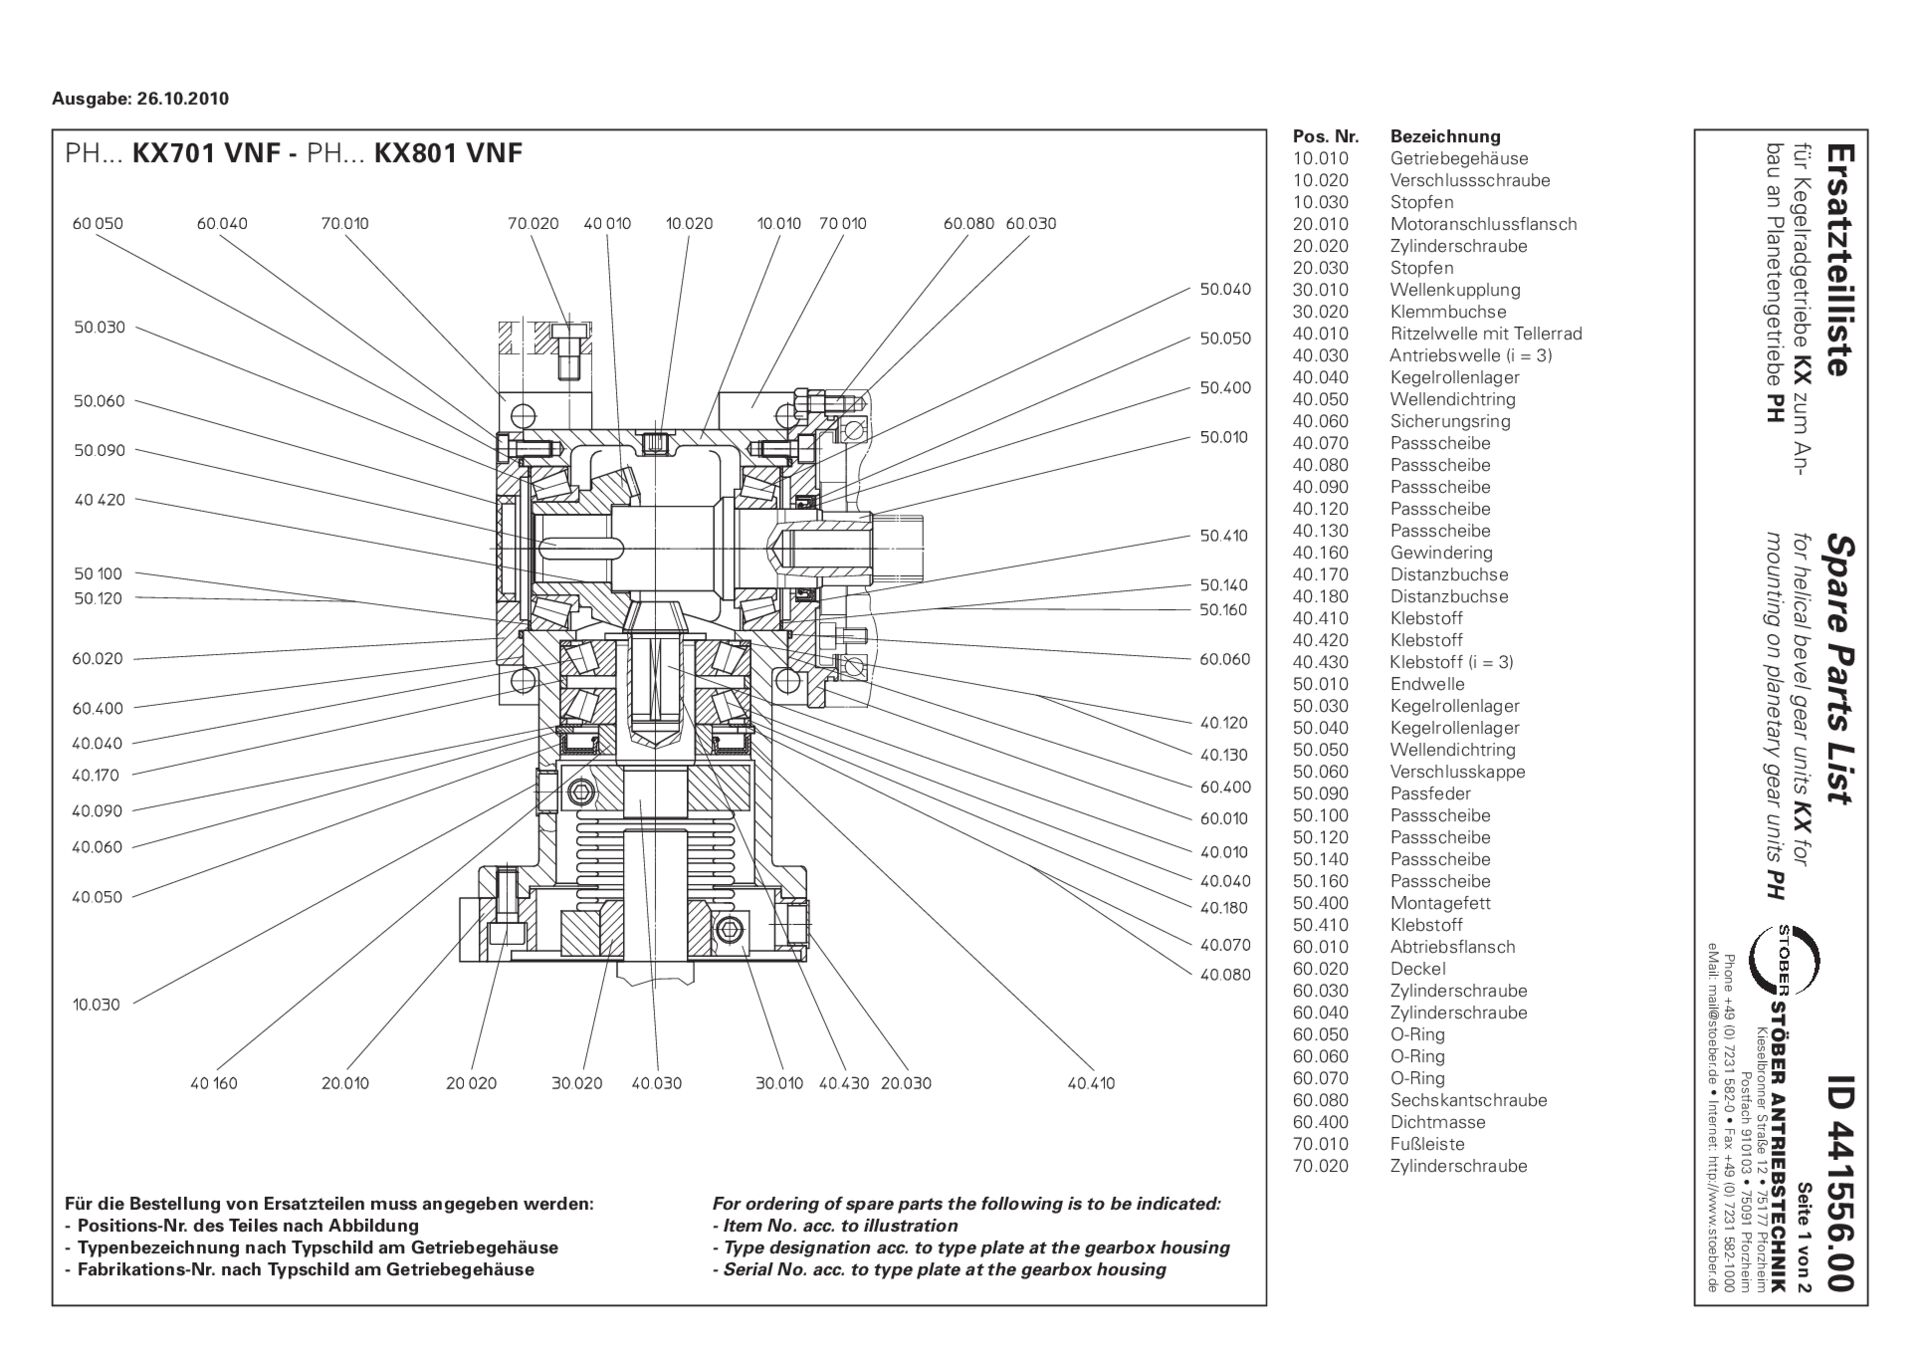 Replacement parts list helical bevel gear units KX701 KX801 VNF for mounting on PH gear unitsErsatzteilliste Kegelradgetriebe KX701 KX801 VNF für den Anbau an PH-Getriebe